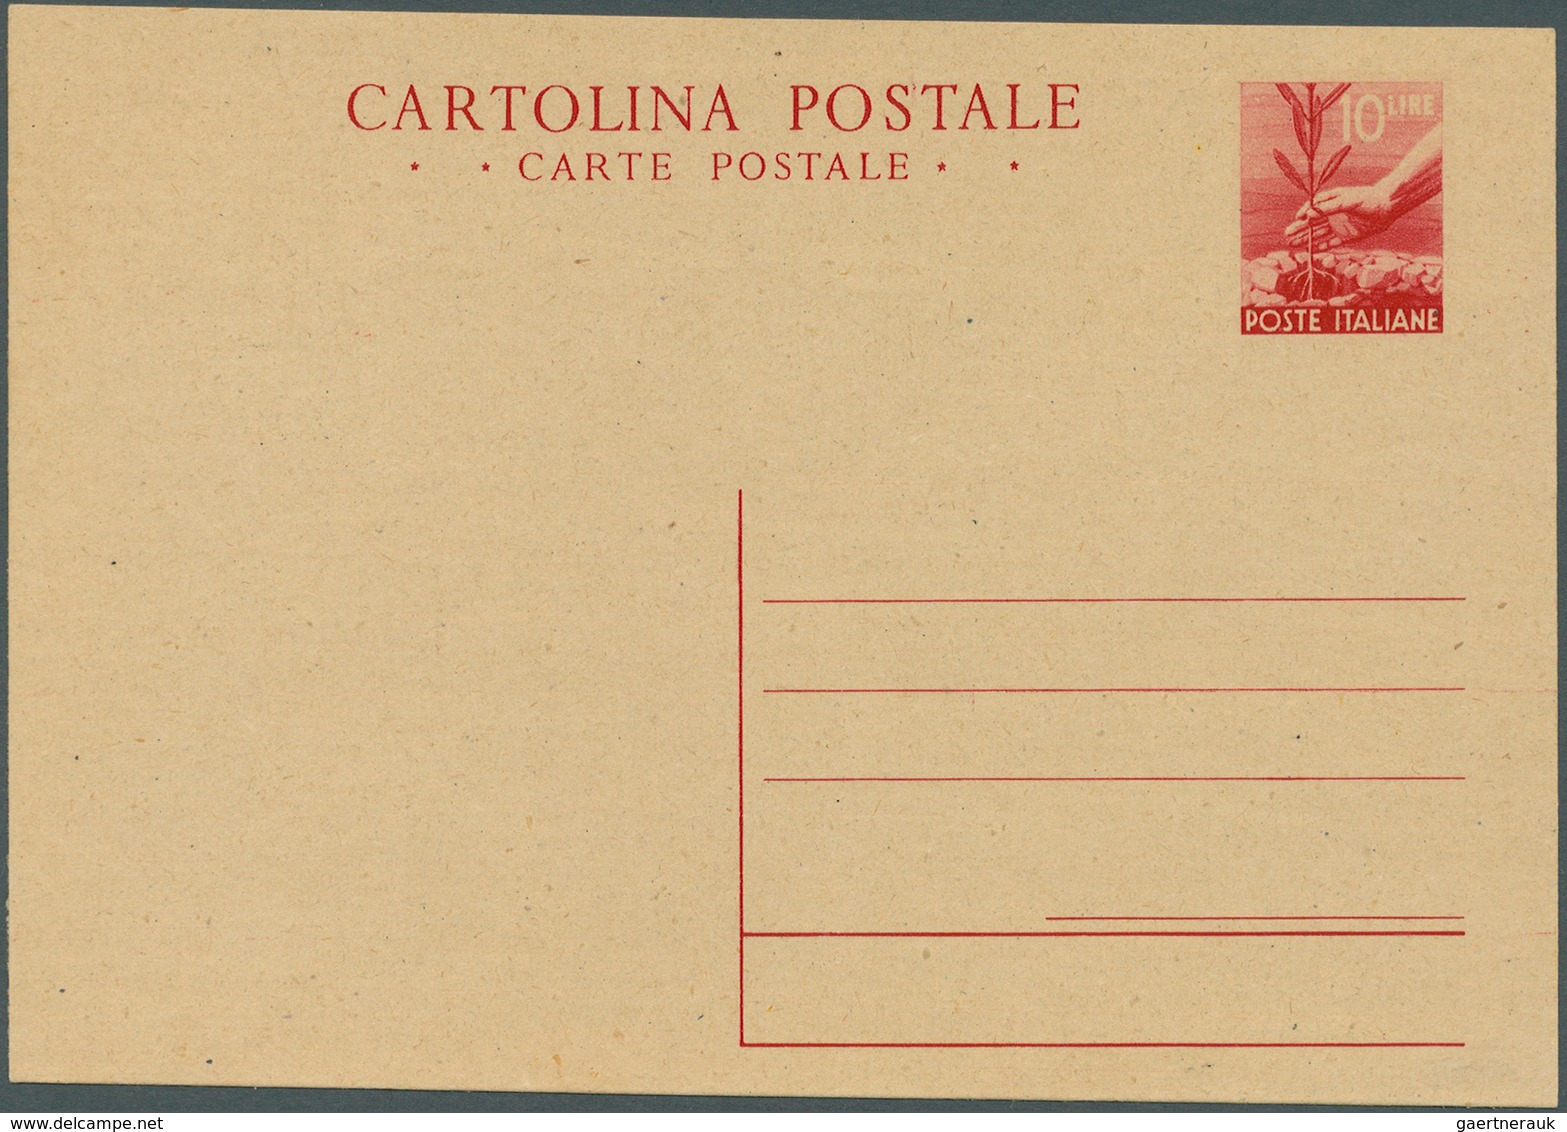 Italien - Ganzsachen: 1945, Postkarte 10 Lire Ölbaumpflanzen Rot Auf Sämisch, Ungebraucht. (Michel 5 - Ganzsachen